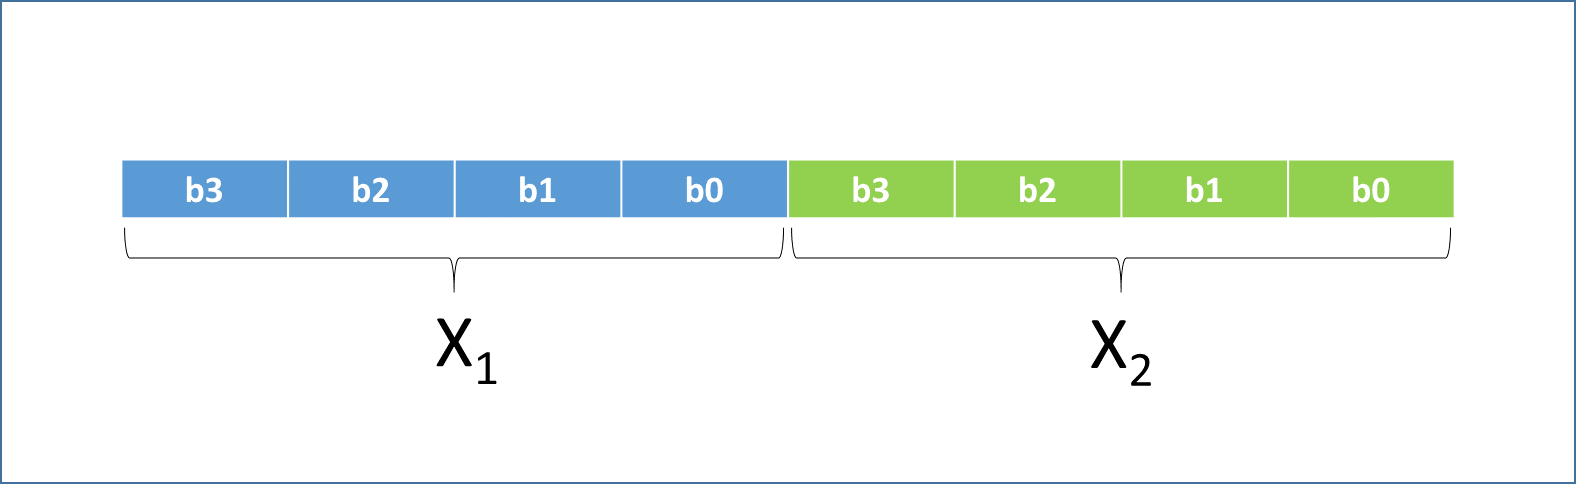 Algoritmos Genéticos Indivíduo ou fenótipo A Figura abaixo apresenta duas variáveis x 1 e x 2 codificadas em dois